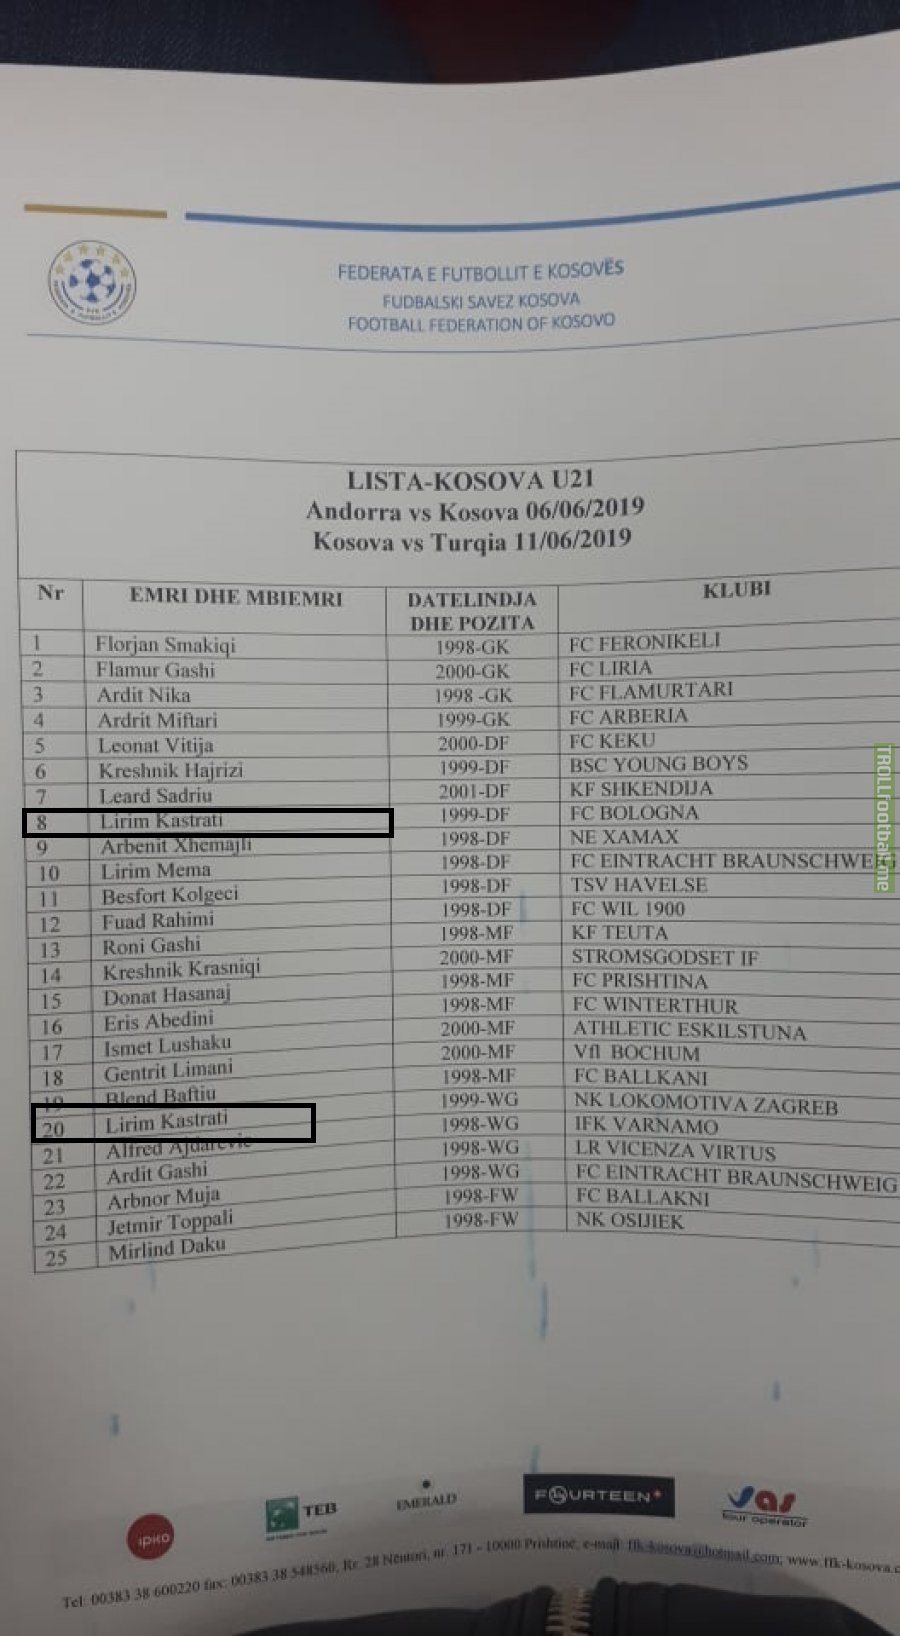 Kosovo U-21 calls up two players with the same exact name (Lirim Kastrati)